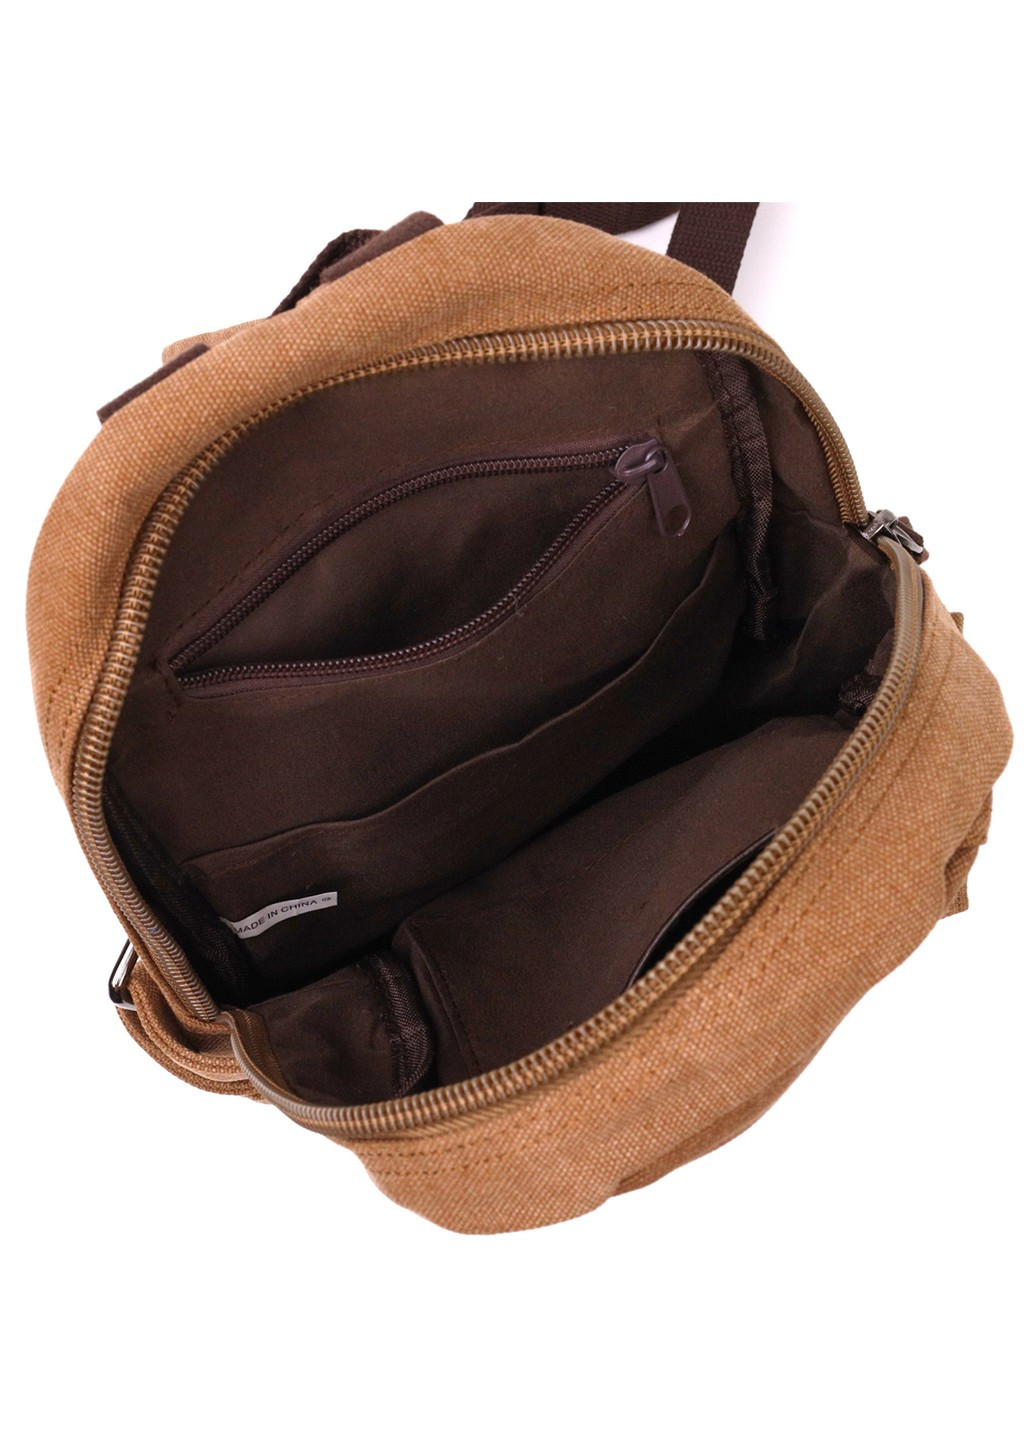 Місткий текстильний рюкзак у стилі мілітарі Vintagе 22180 Коричневий Vintage (267925308)